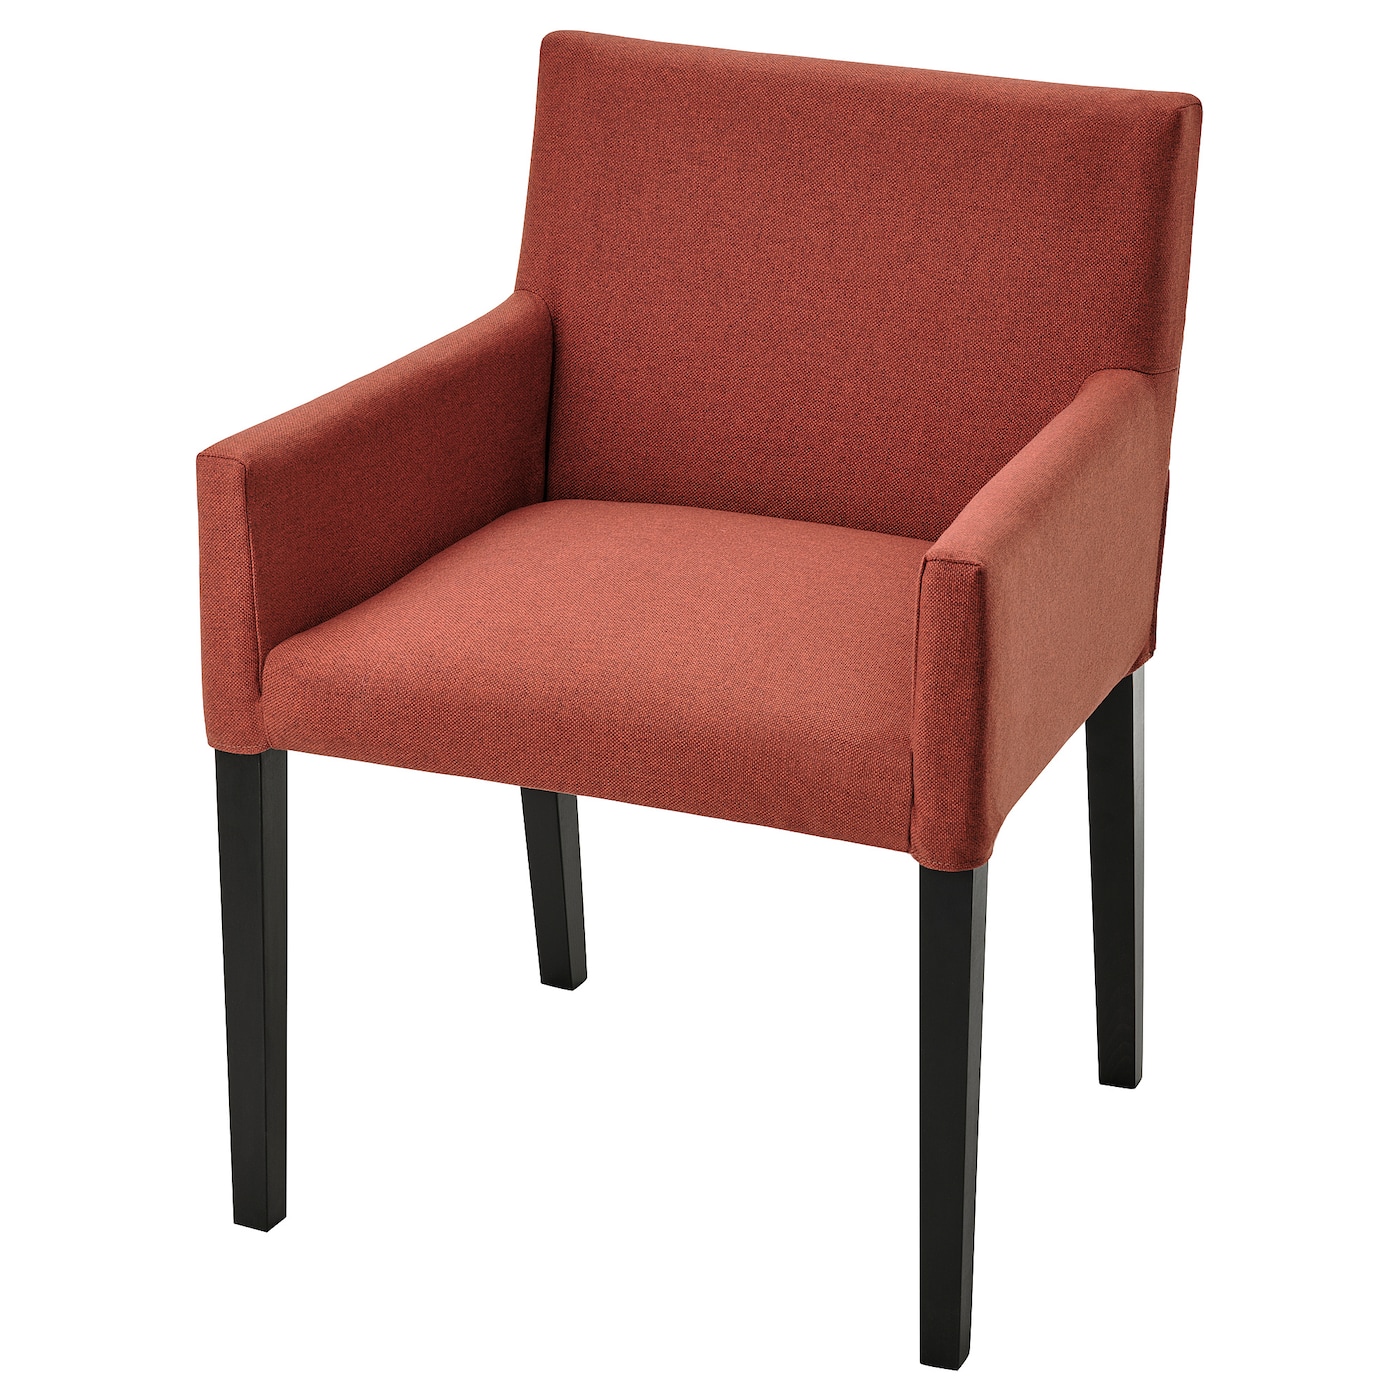 Чехол на стул с подлокотниками - MÅRENÄS / MАRENАS IKEA/ МОРЕНЭС ИКЕА,  красный